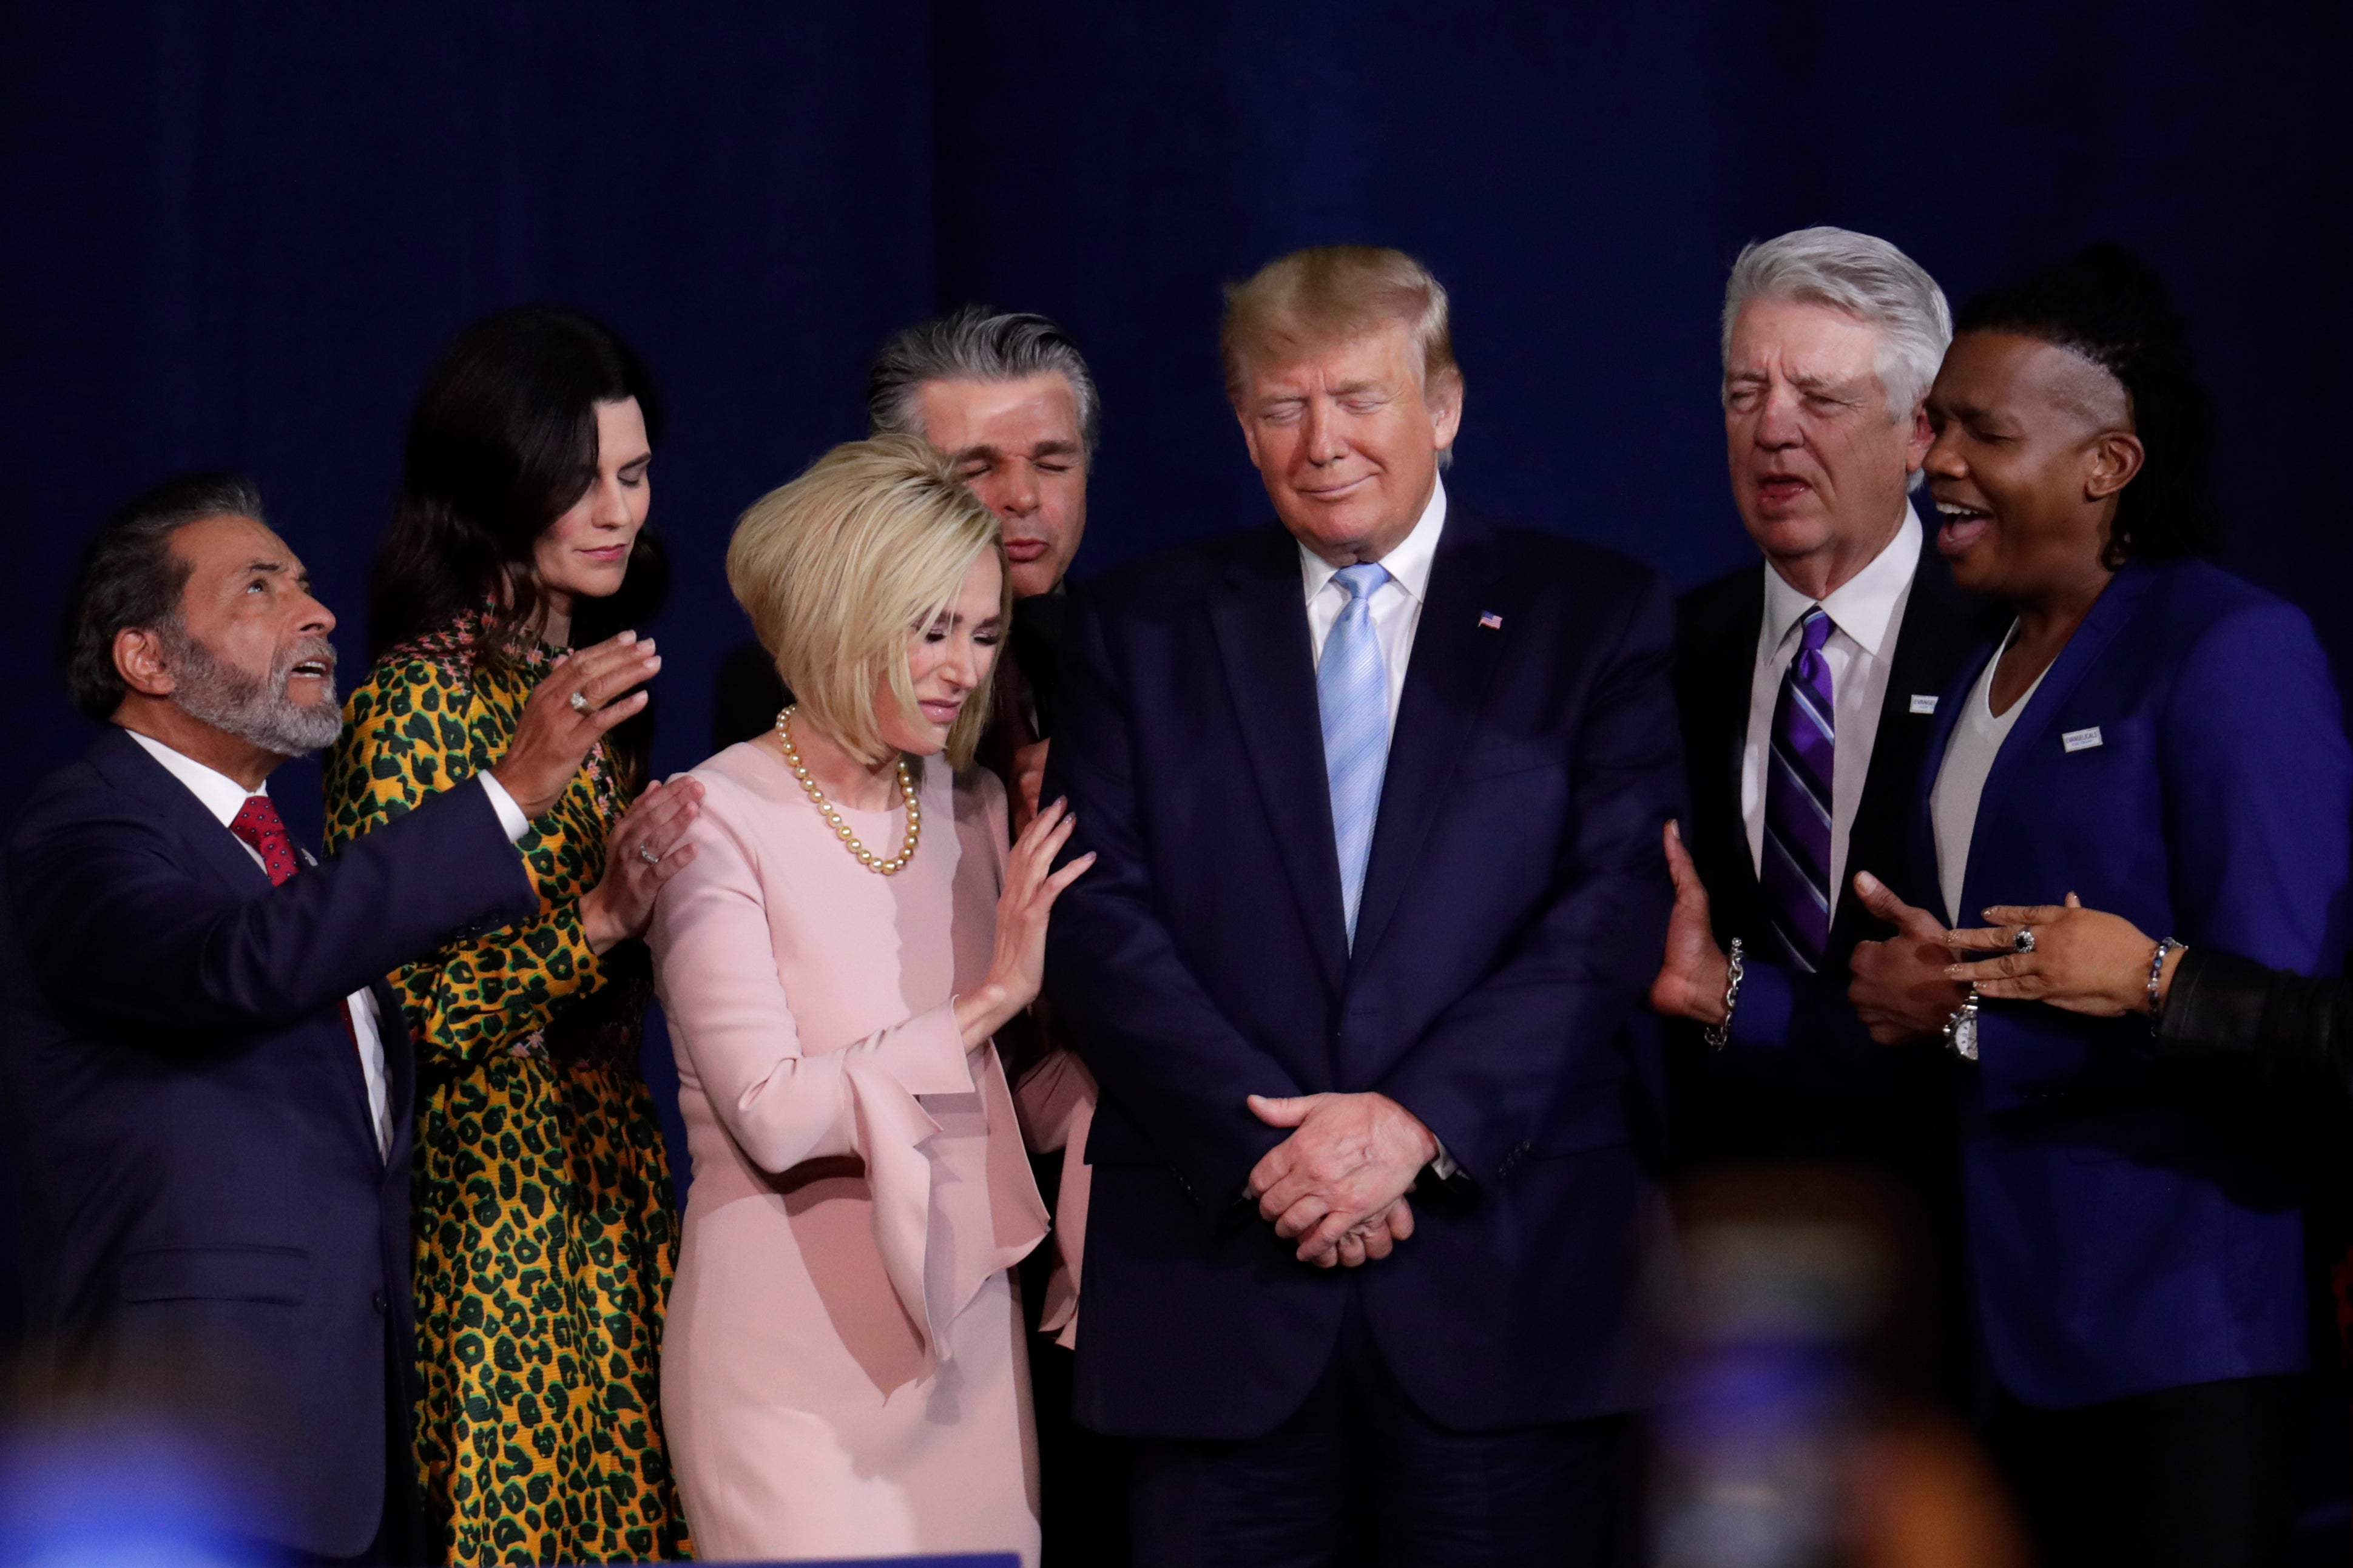 Los cristianos evangélicos conservadores que ayudaron a enviar a Donald Trump a la Casa Blanca hace cuatro años se quedaron con él nuevamente en 2020.